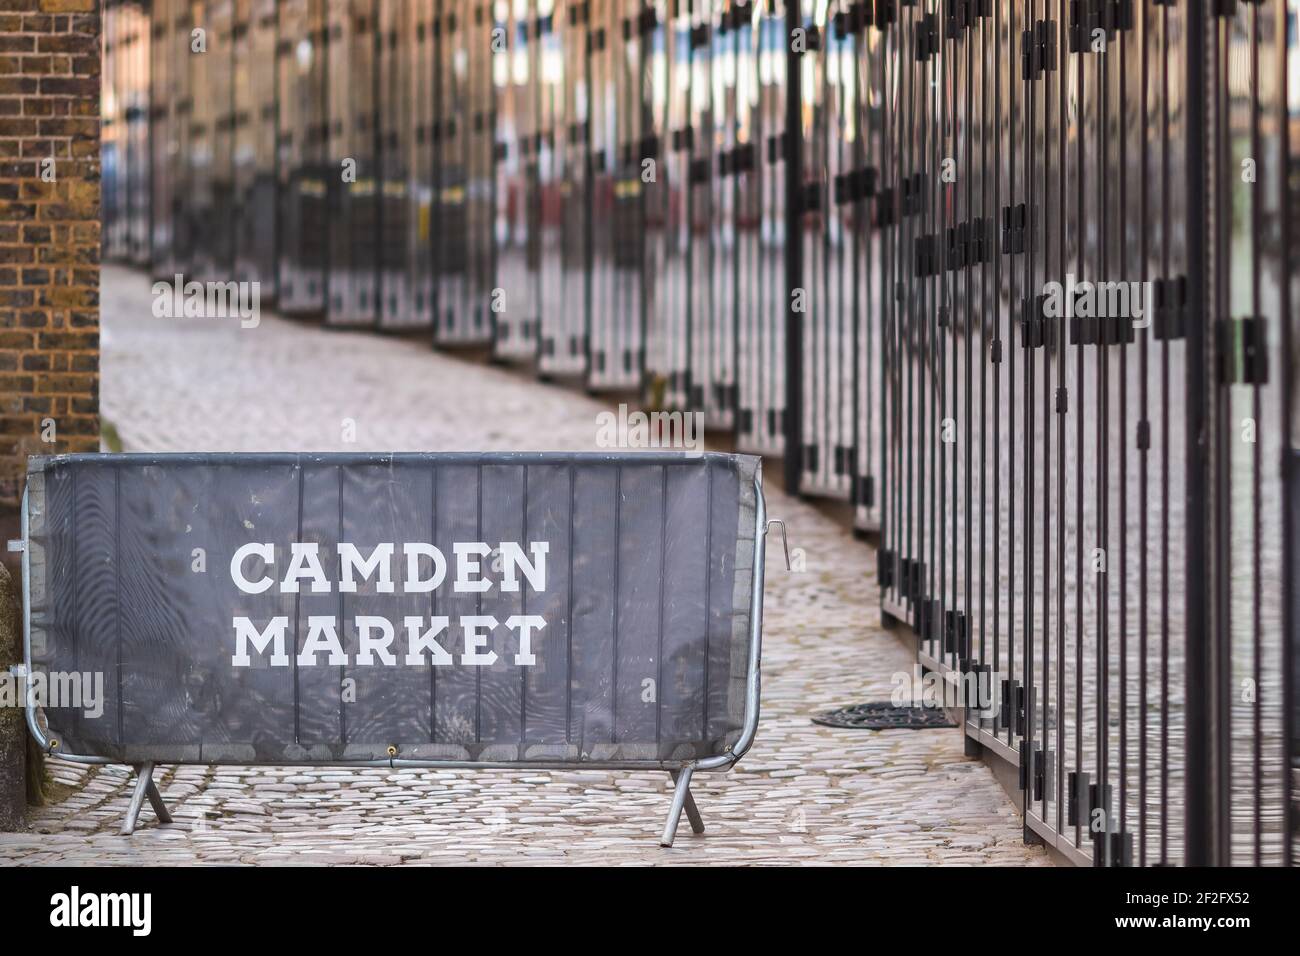 Londres, Royaume-Uni - 26 février 2021 - la rangée d'étals est fermée au marché de Camden pendant le confinement national Banque D'Images